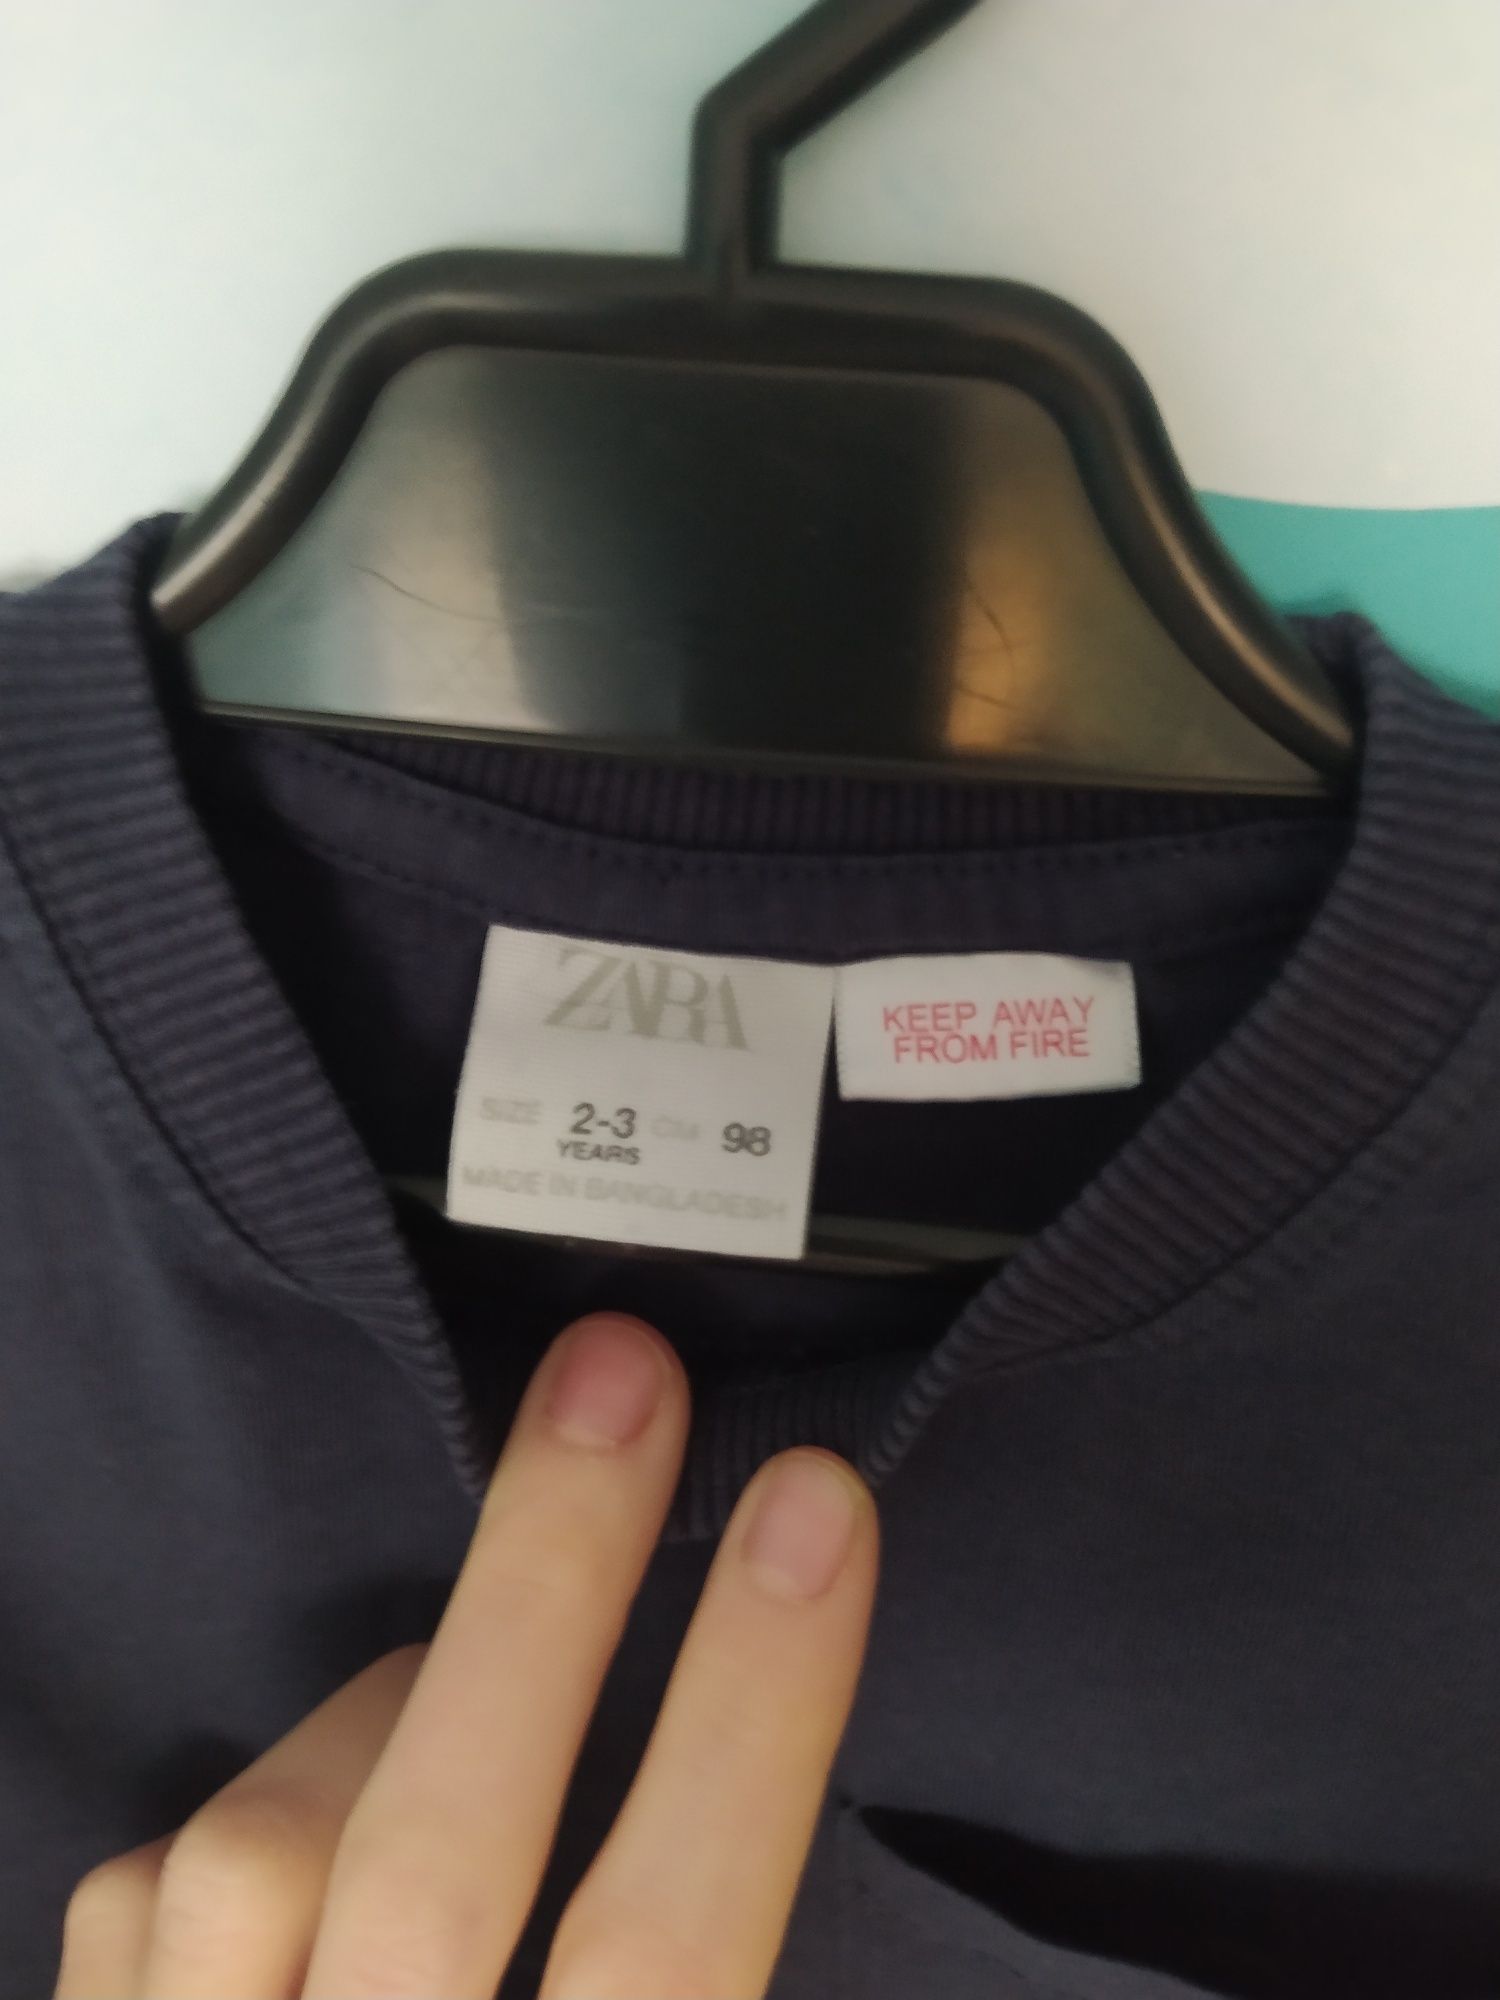 Bluzka  ZARA koszulka z długim rekawem tshirt długi rękaw 92 - 98